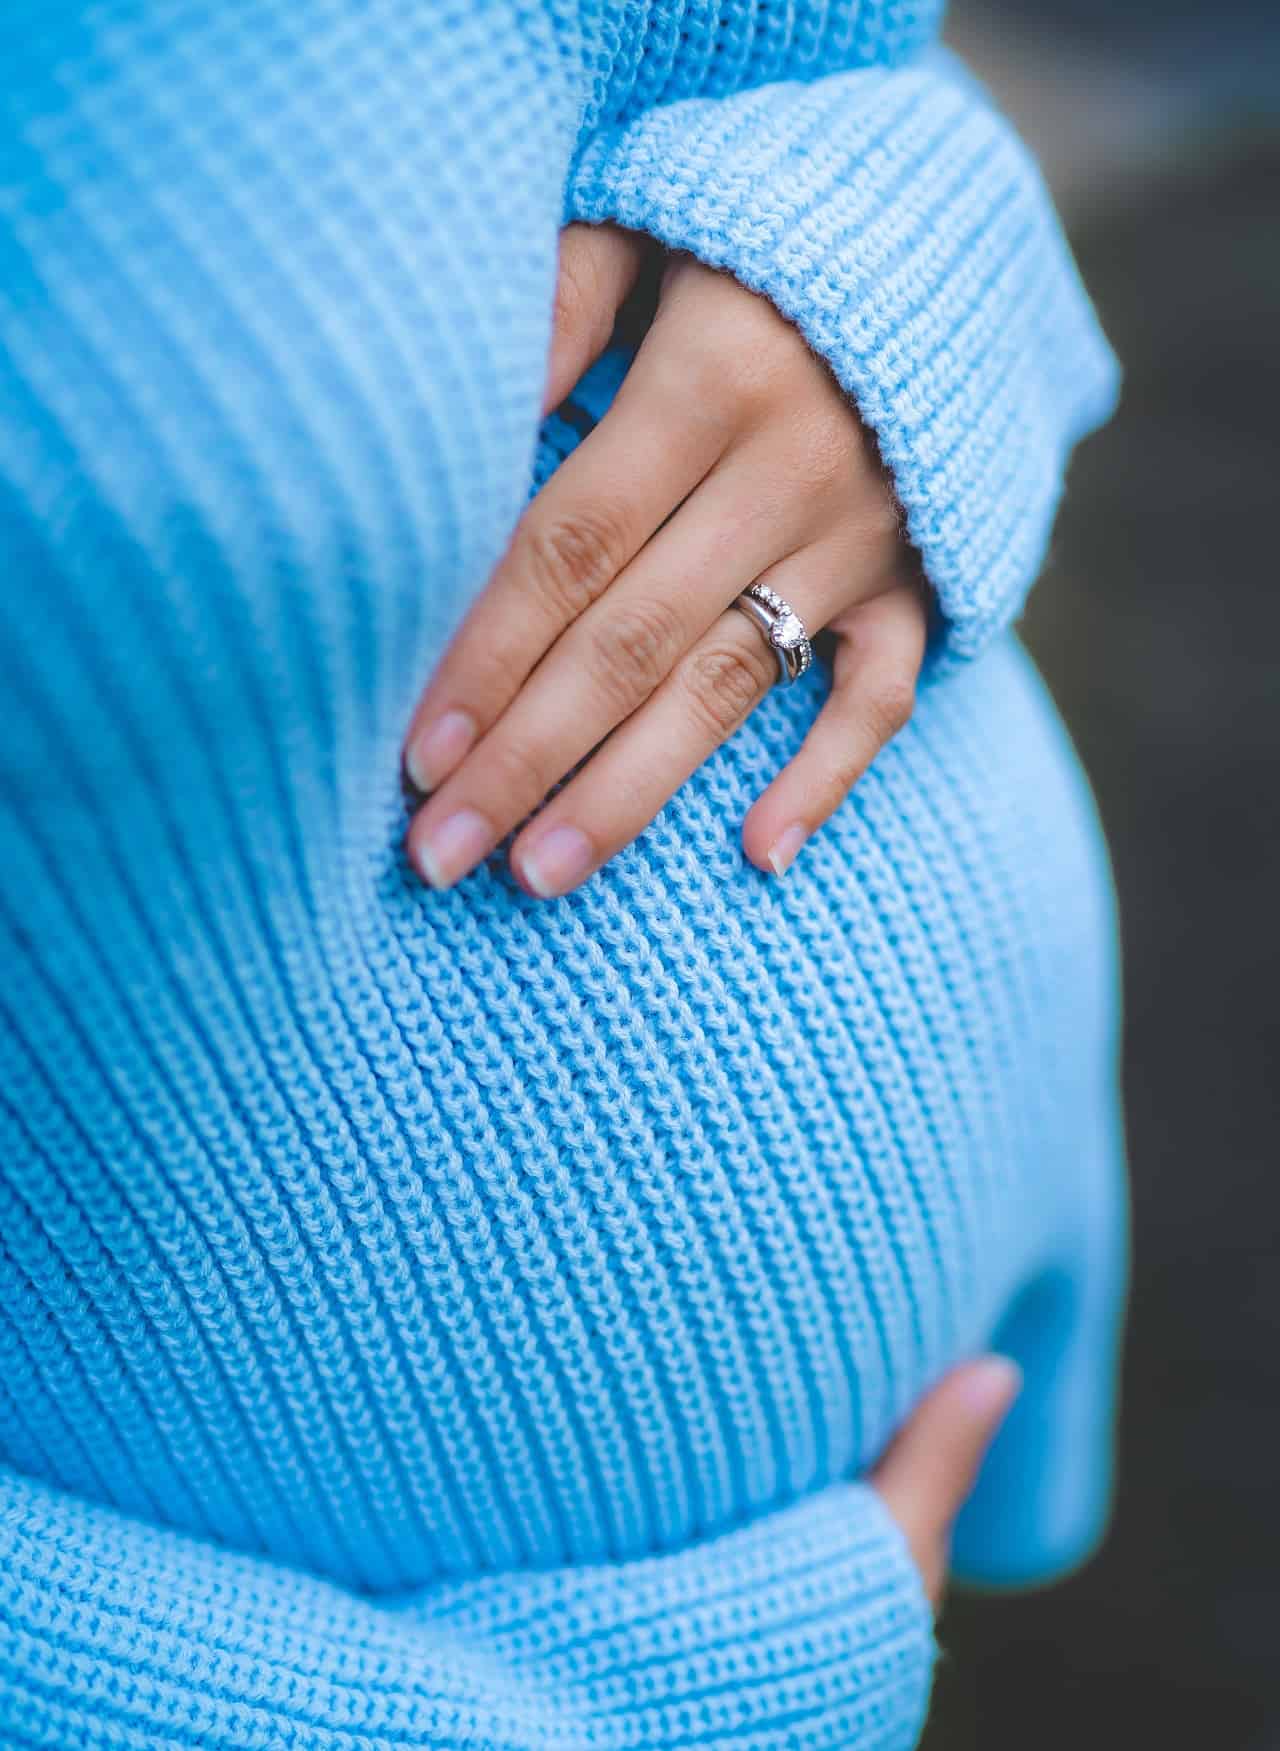 Zmiany klimatyczne to wróg dla zdrowia kobiet w ciąży – wynika z amerykańskich badań